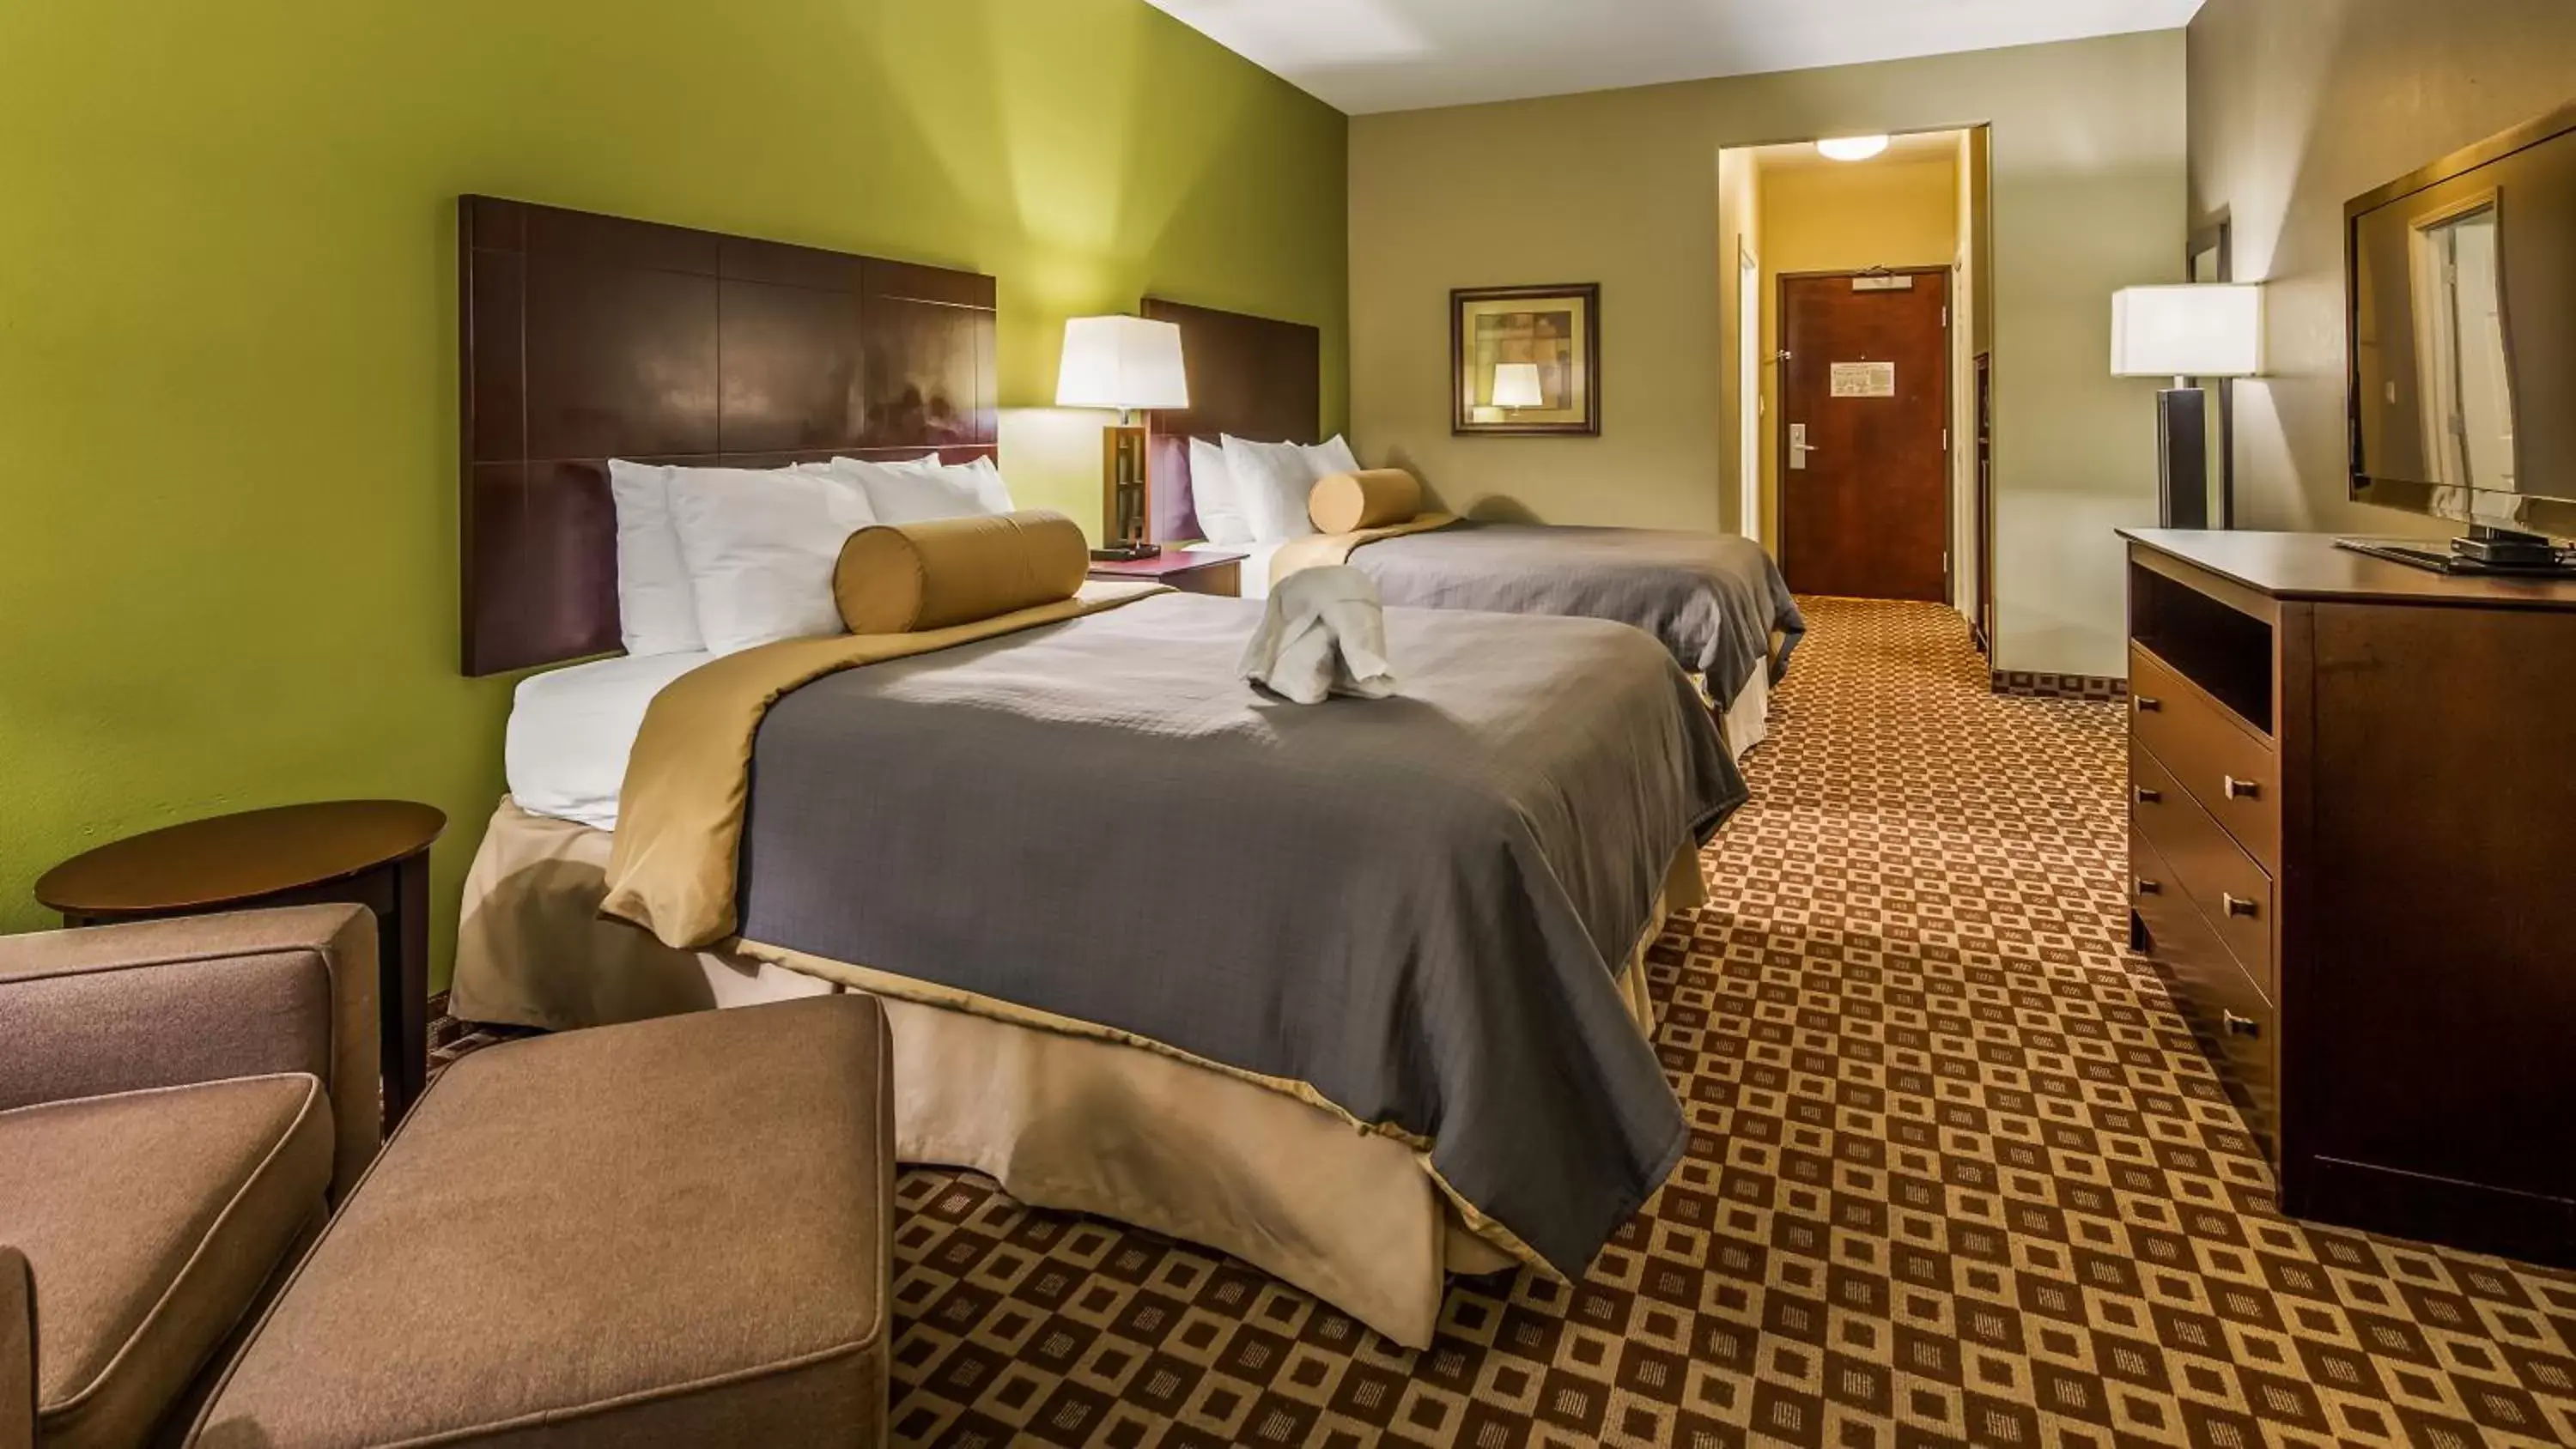 Bedroom, Bed in Best Western Plus Chalmette Hotel